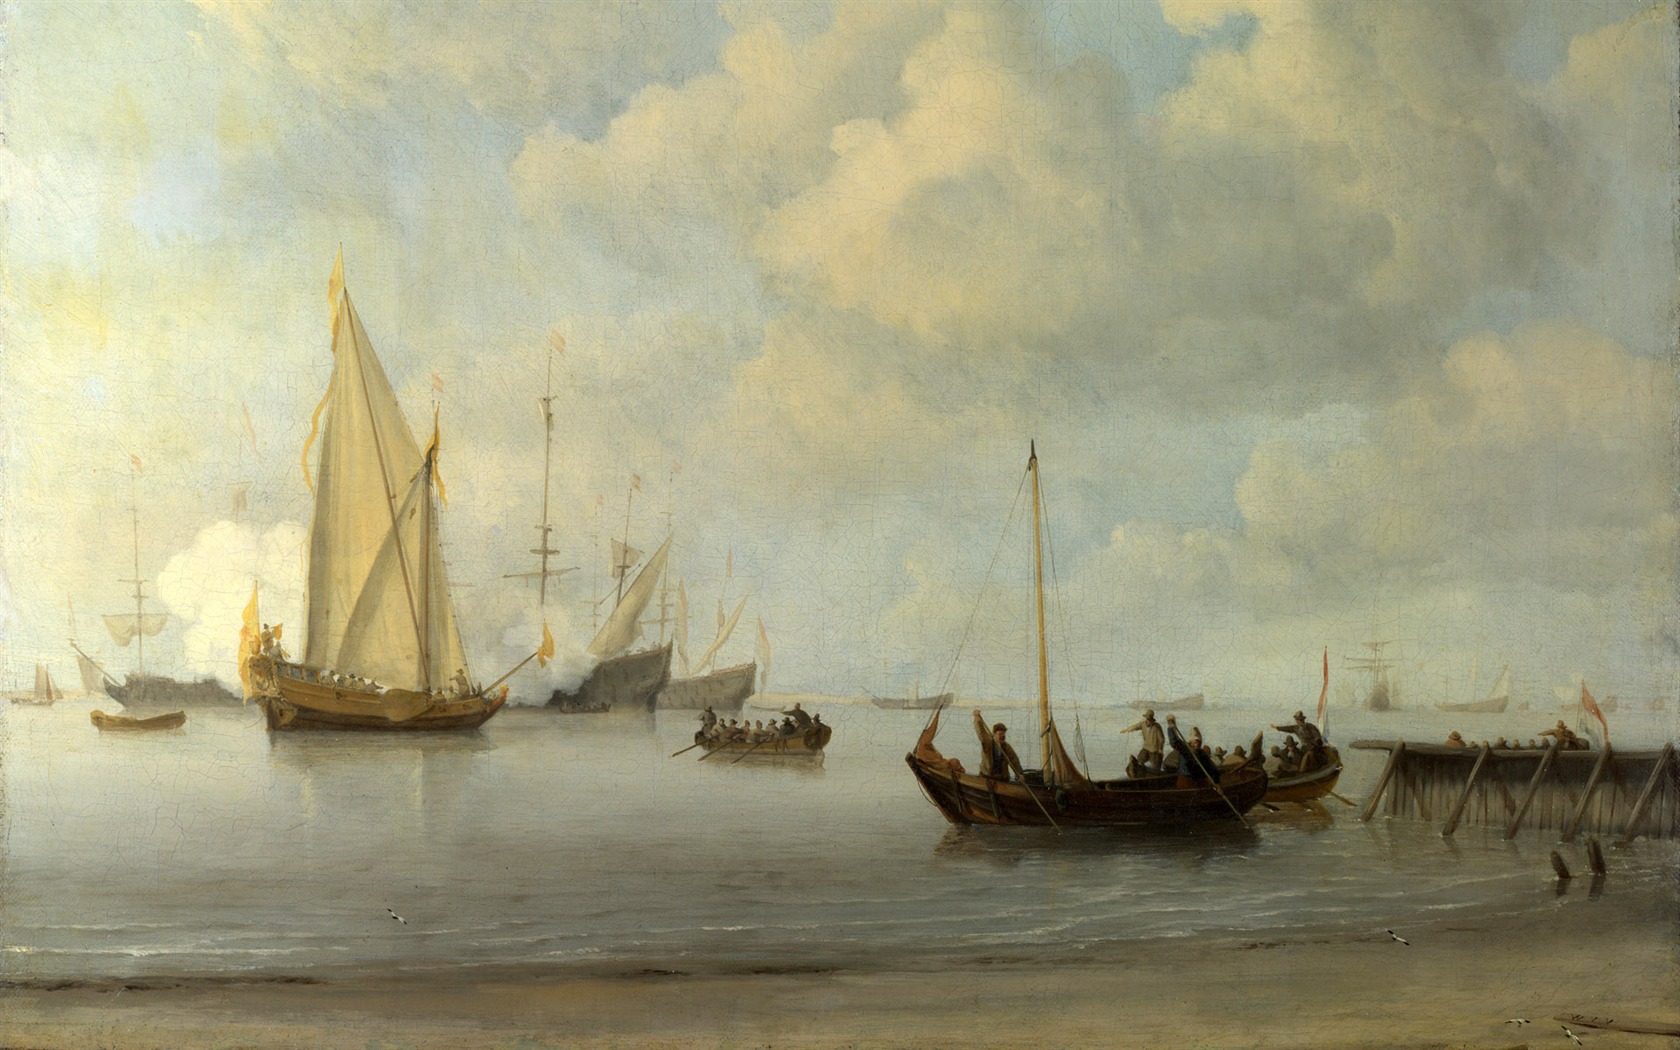 伦敦画廊帆船 壁纸(二)6 - 1680x1050